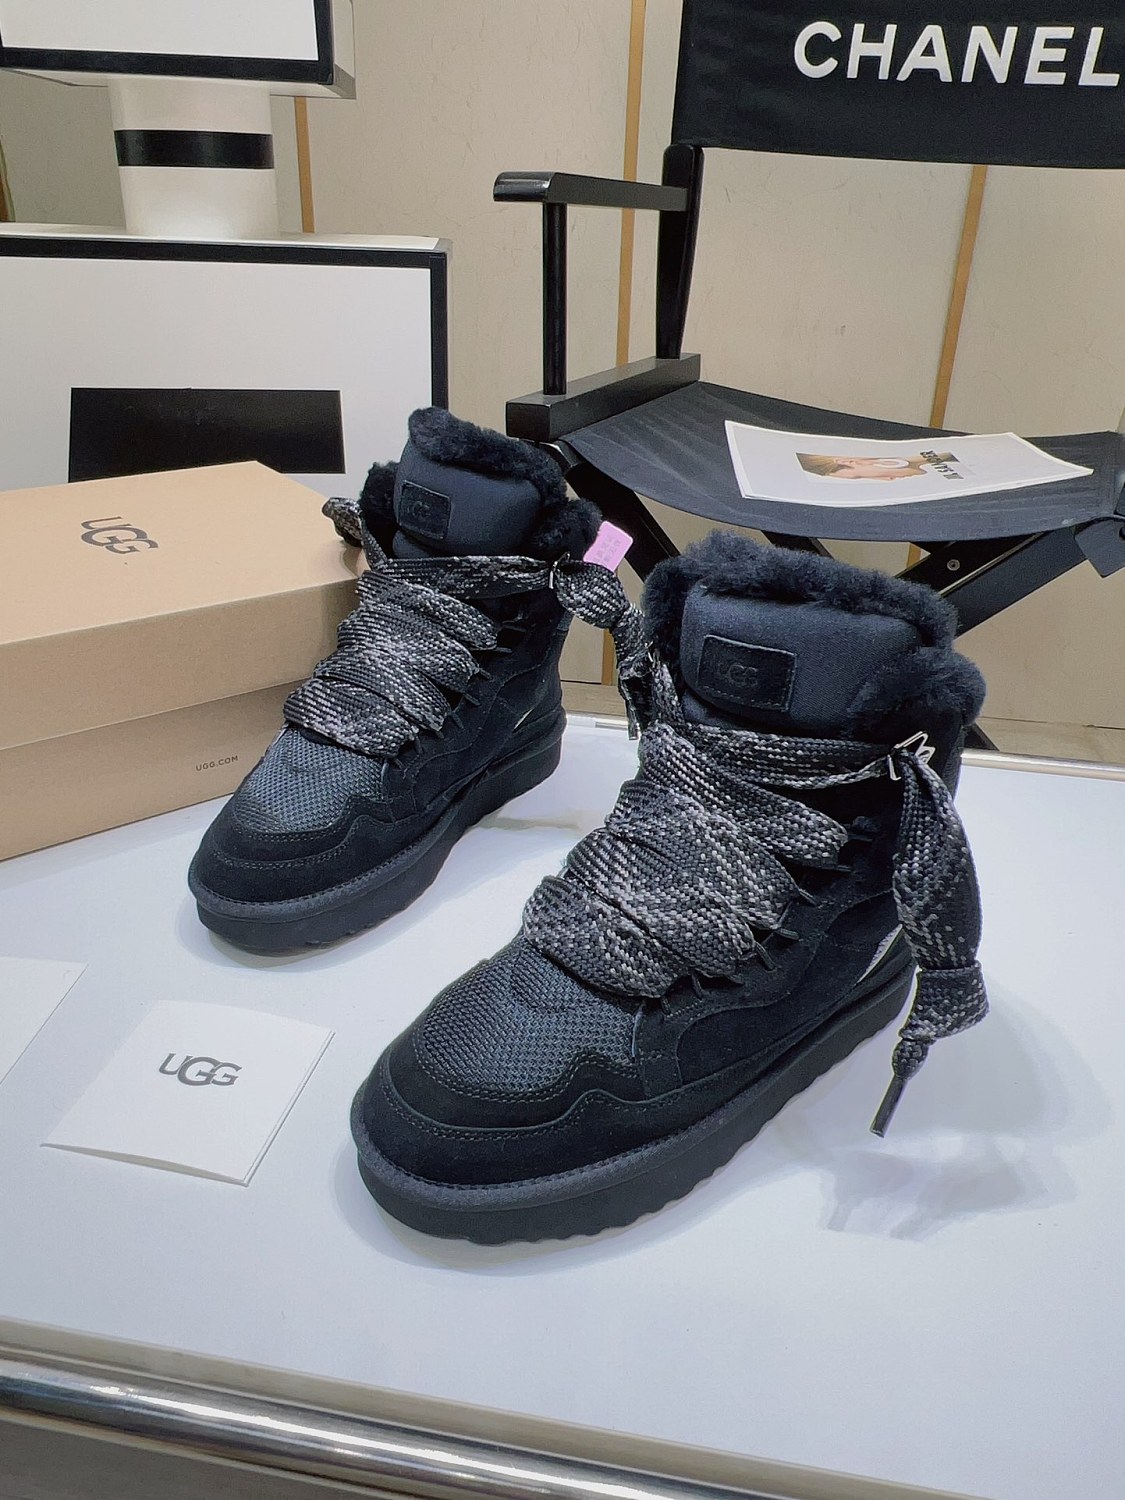 US$ 54.99 - UGG Lowmel Sneaker in Black - www.fashion-wish.net